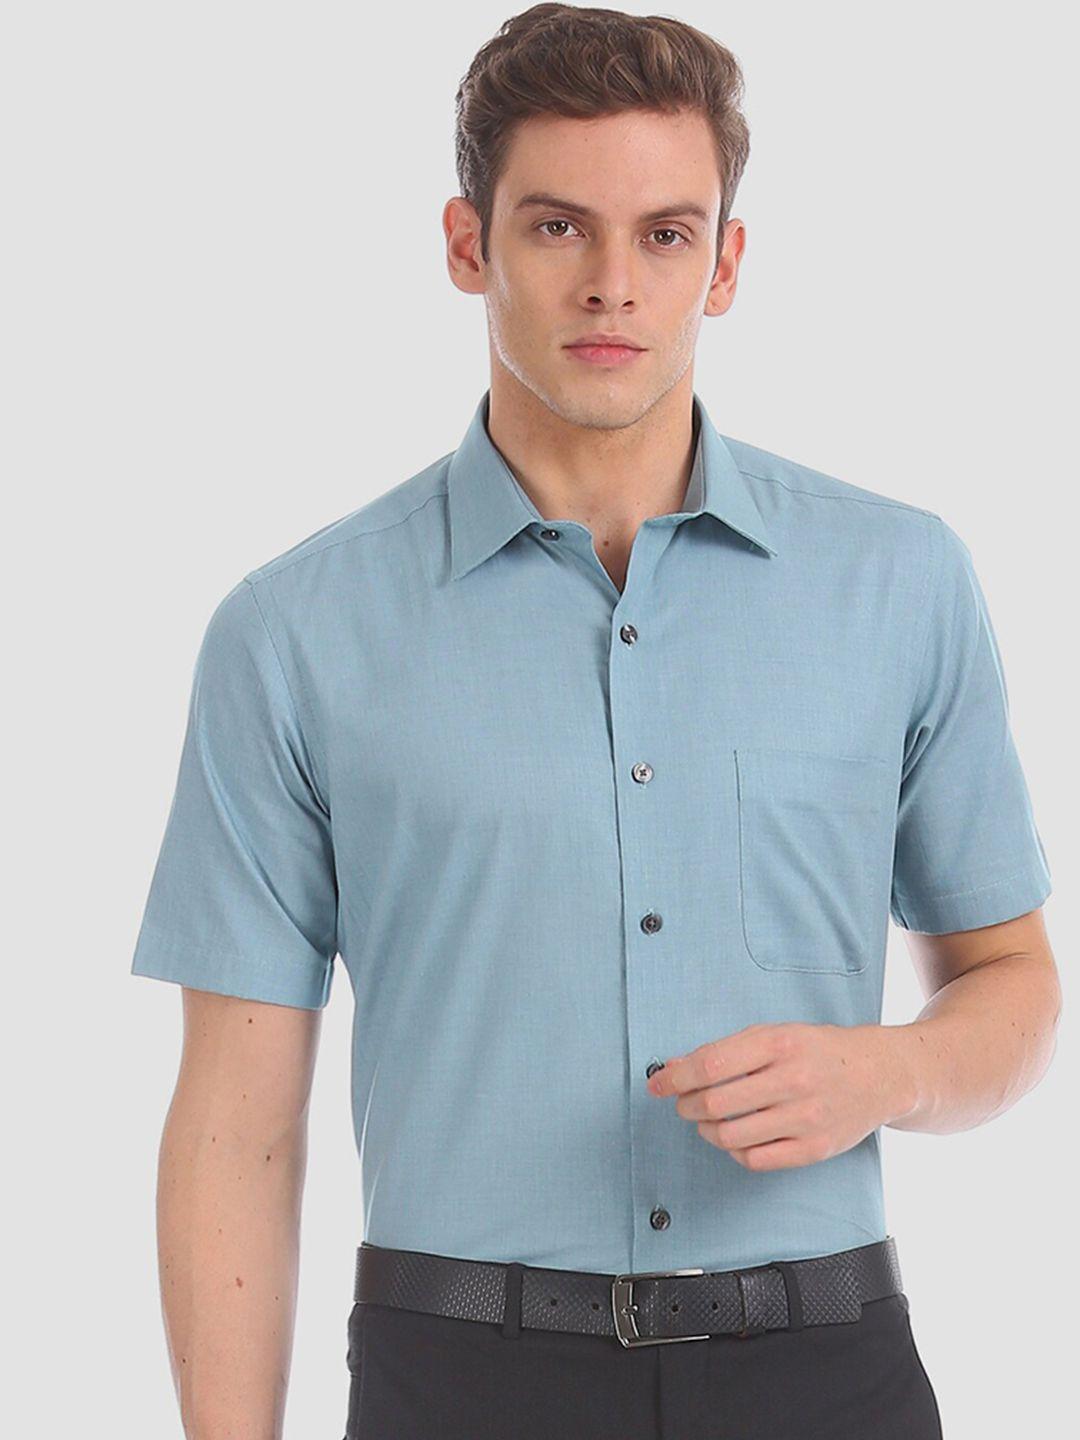 arrow men blue regular fit solid formal shirt